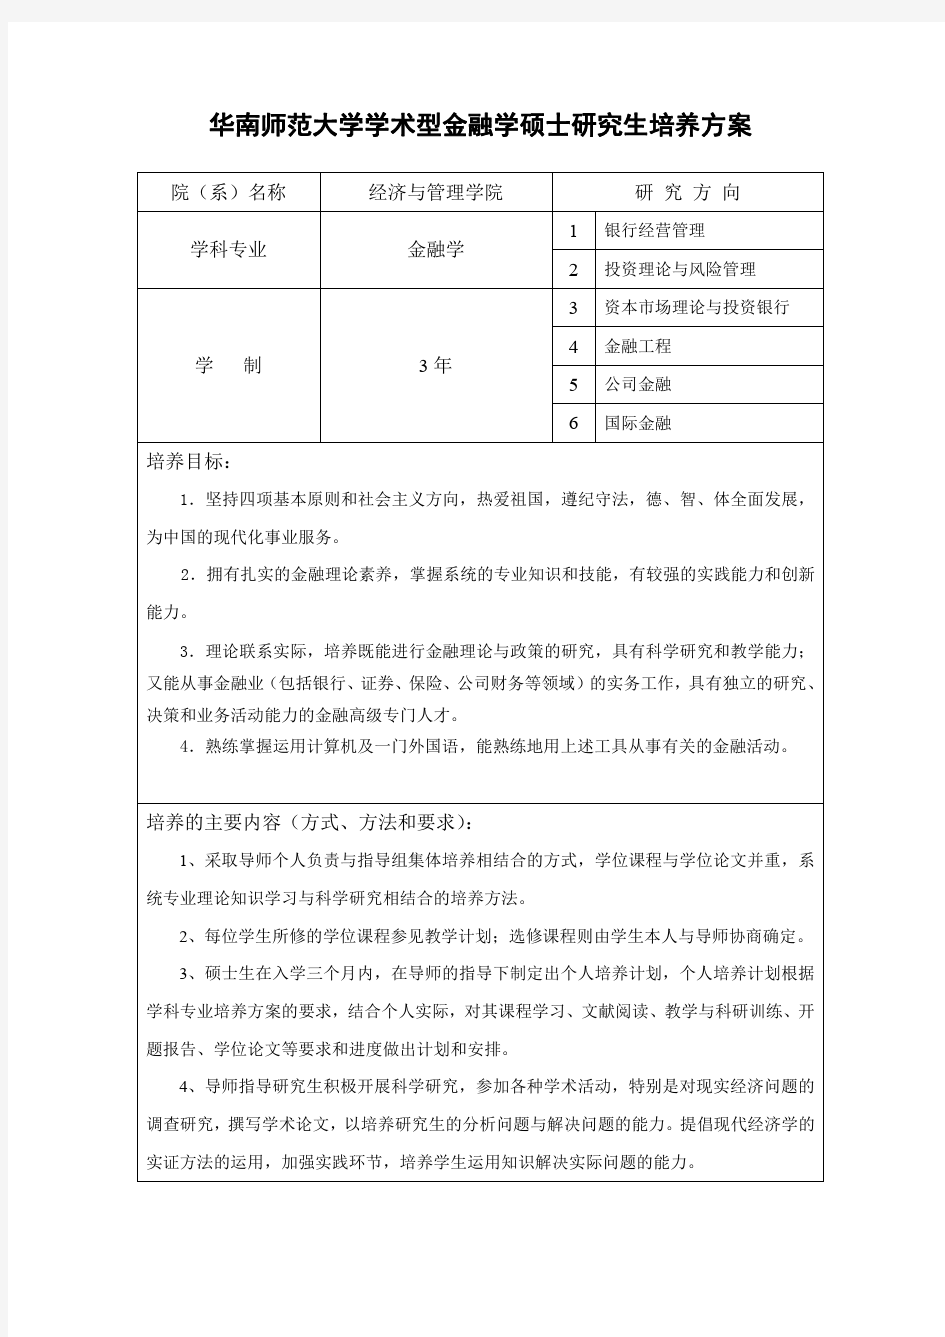 华南师范大学金融学(020204)培养方案(2015年版)